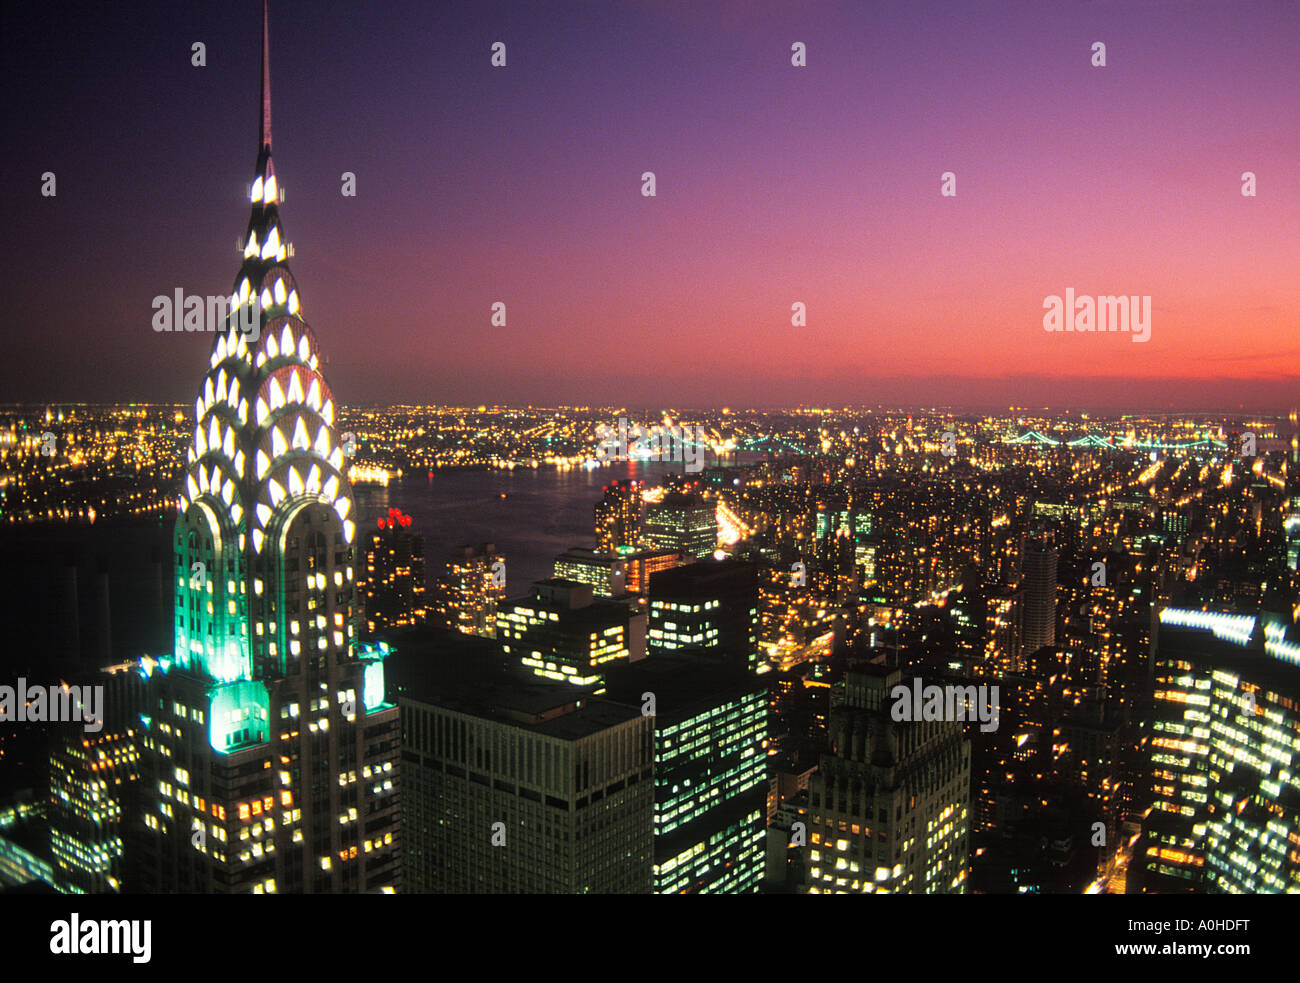 Le gratte-ciel art déco de Chrysler Building par le dessus.New York City illuminée au coucher du soleil.Vue aérienne de Midtown Manhattan, horizon, East River Banque D'Images